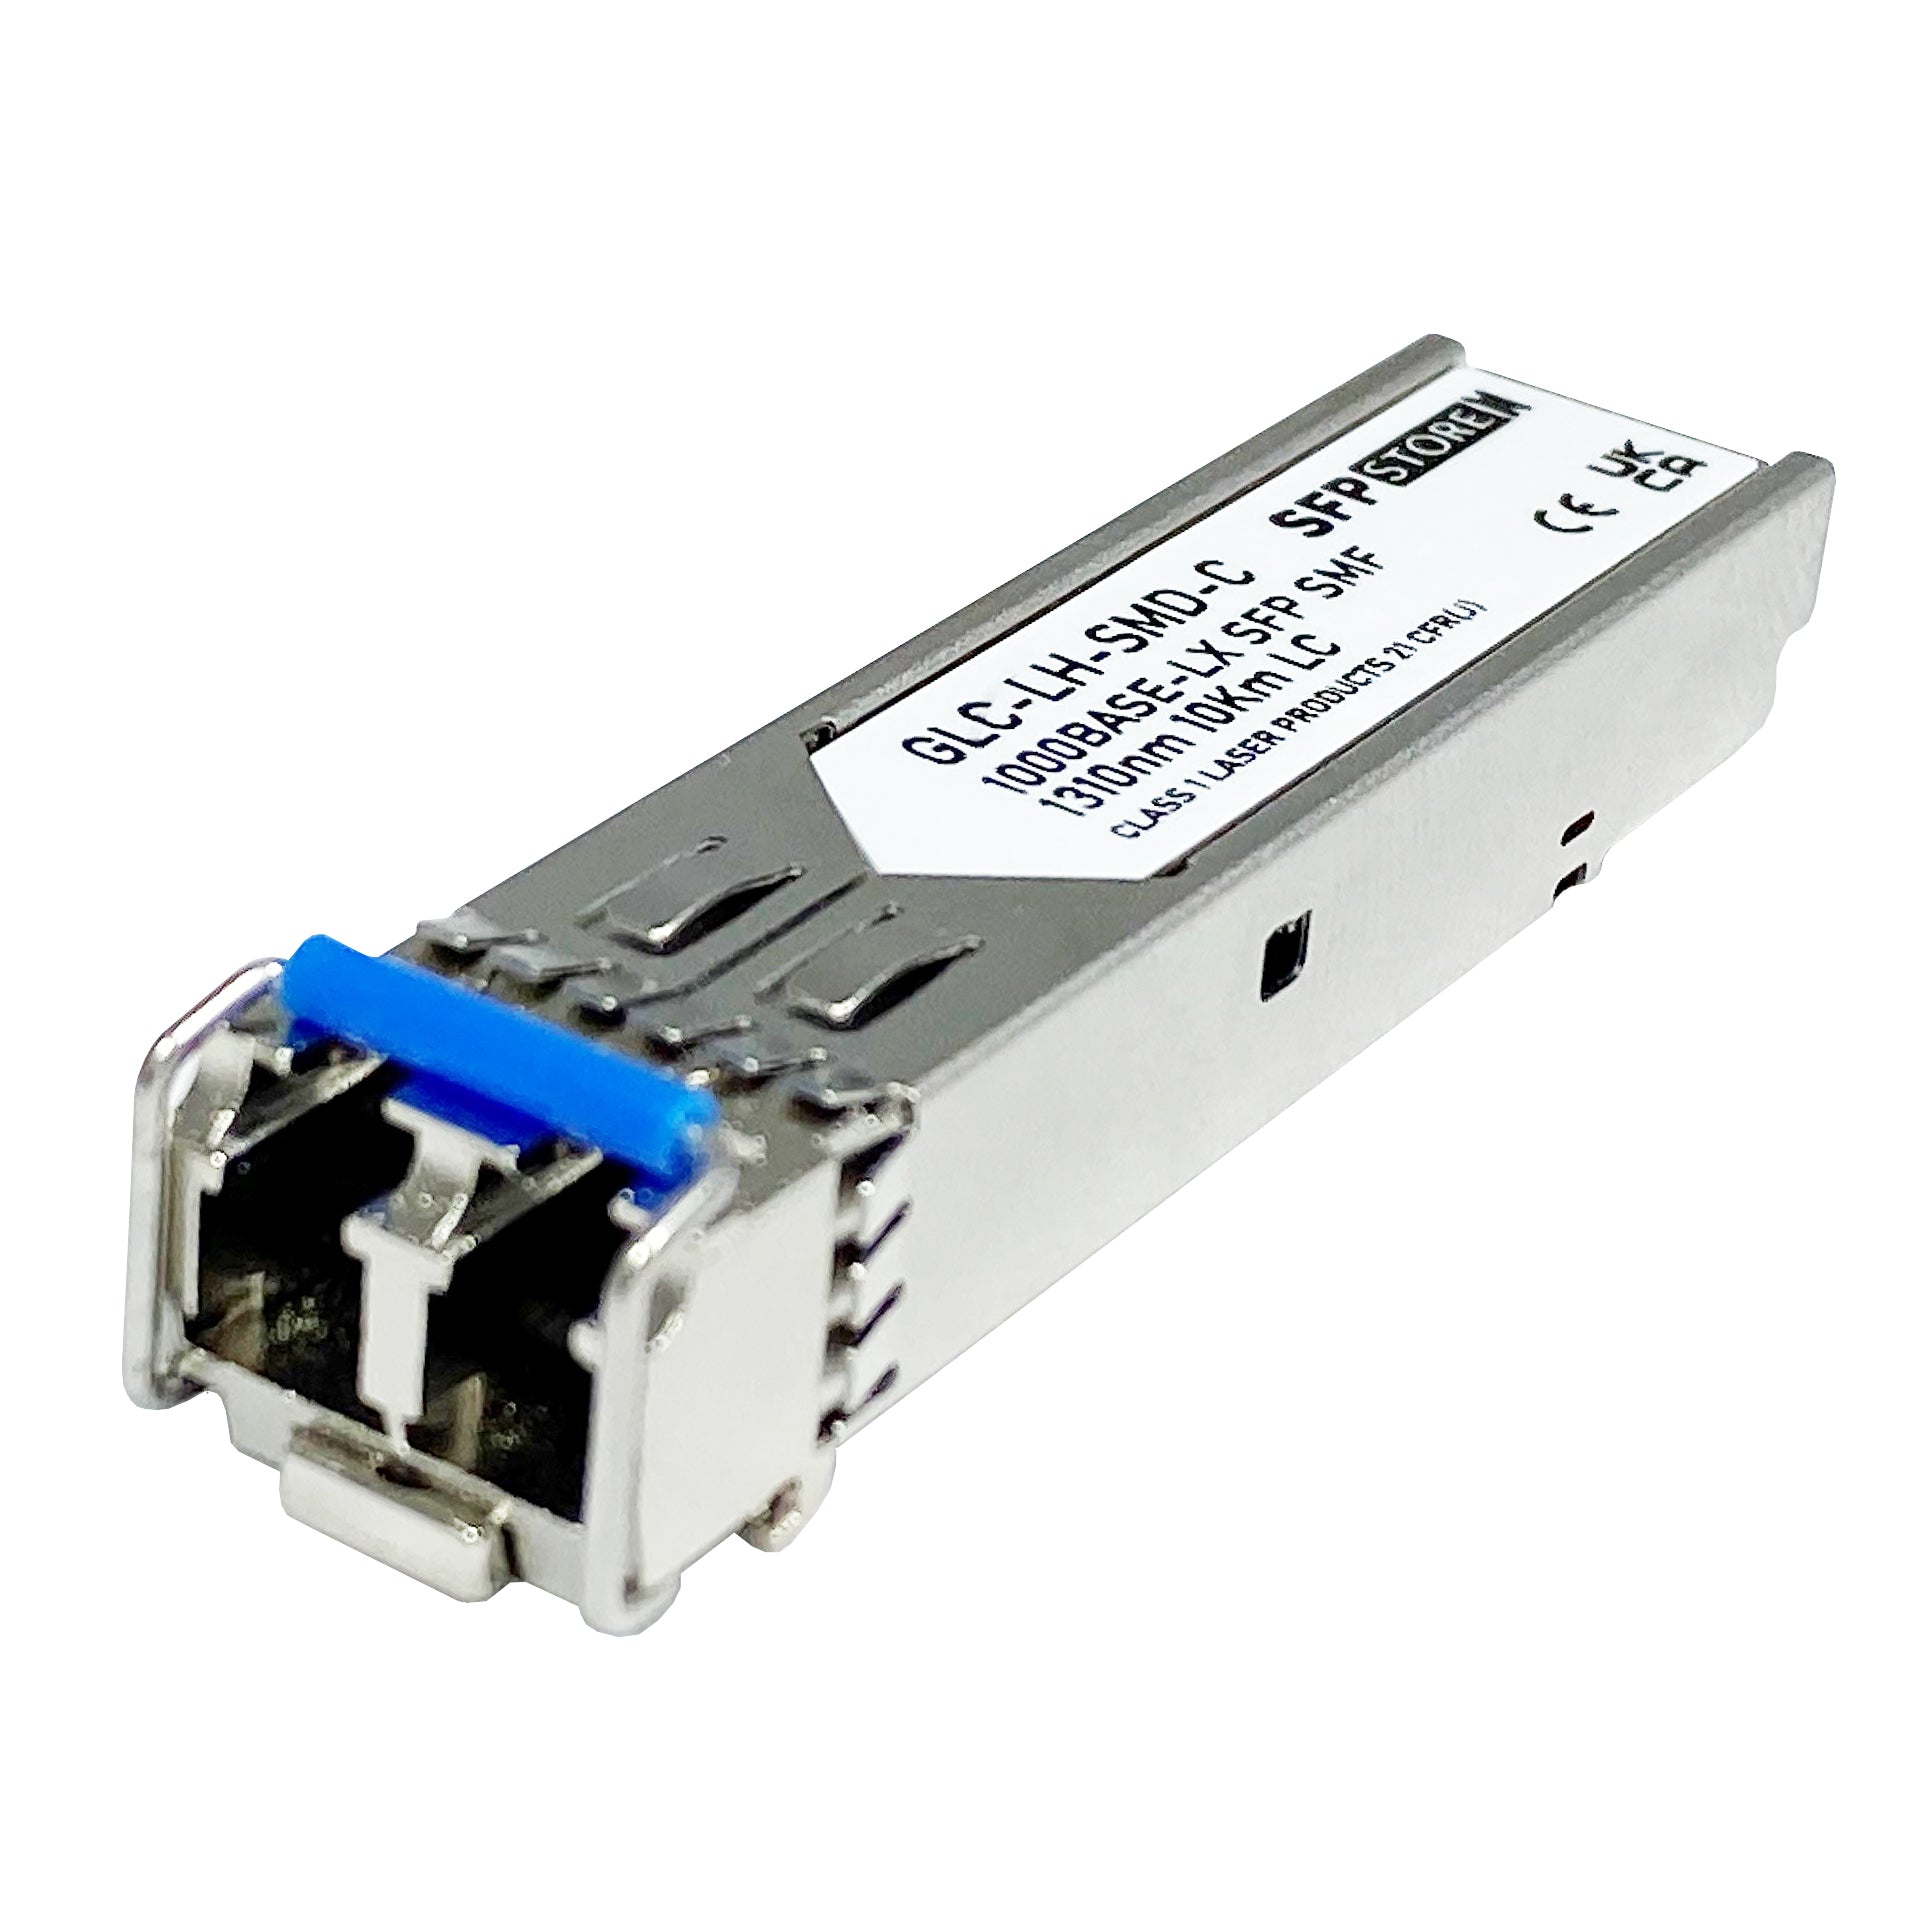 ET4202-LX-C Edge-Core Compatible 1G LX SFP LC Transceiver